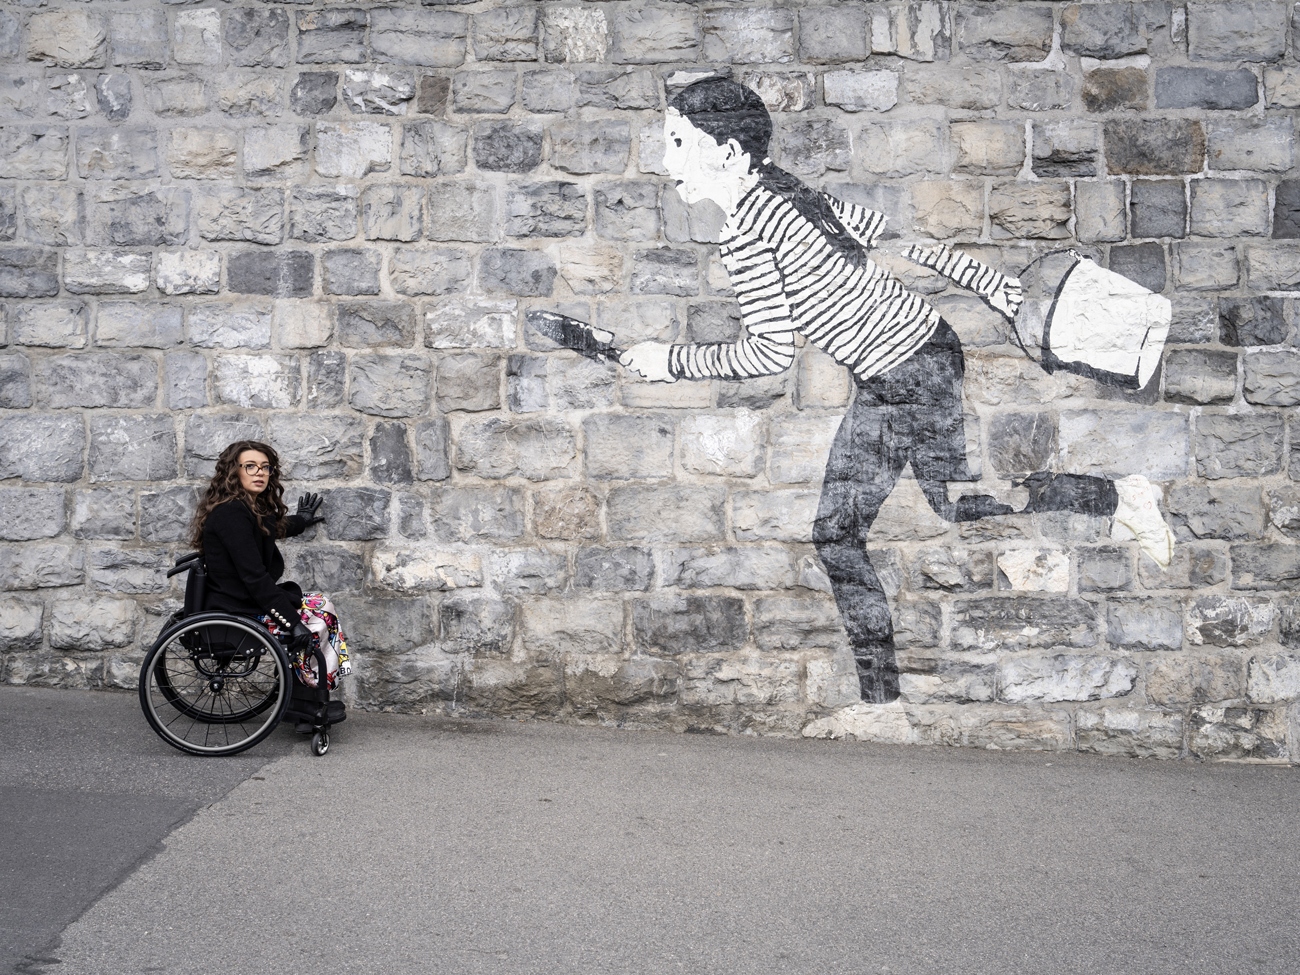 Mobilité réduite: Une balade en fauteuil avec Patrizia Mori